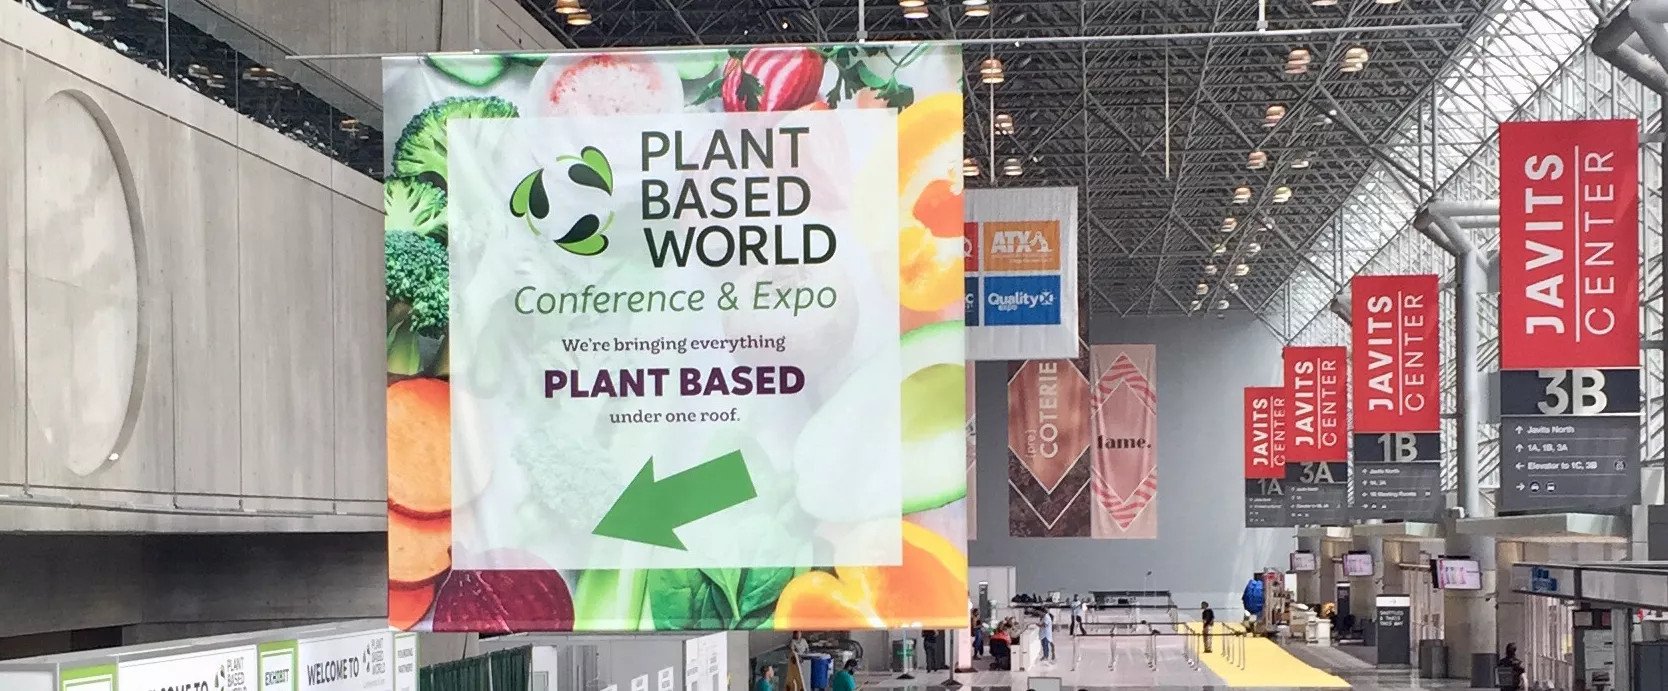 Plant-Based-World-Banner.jpg